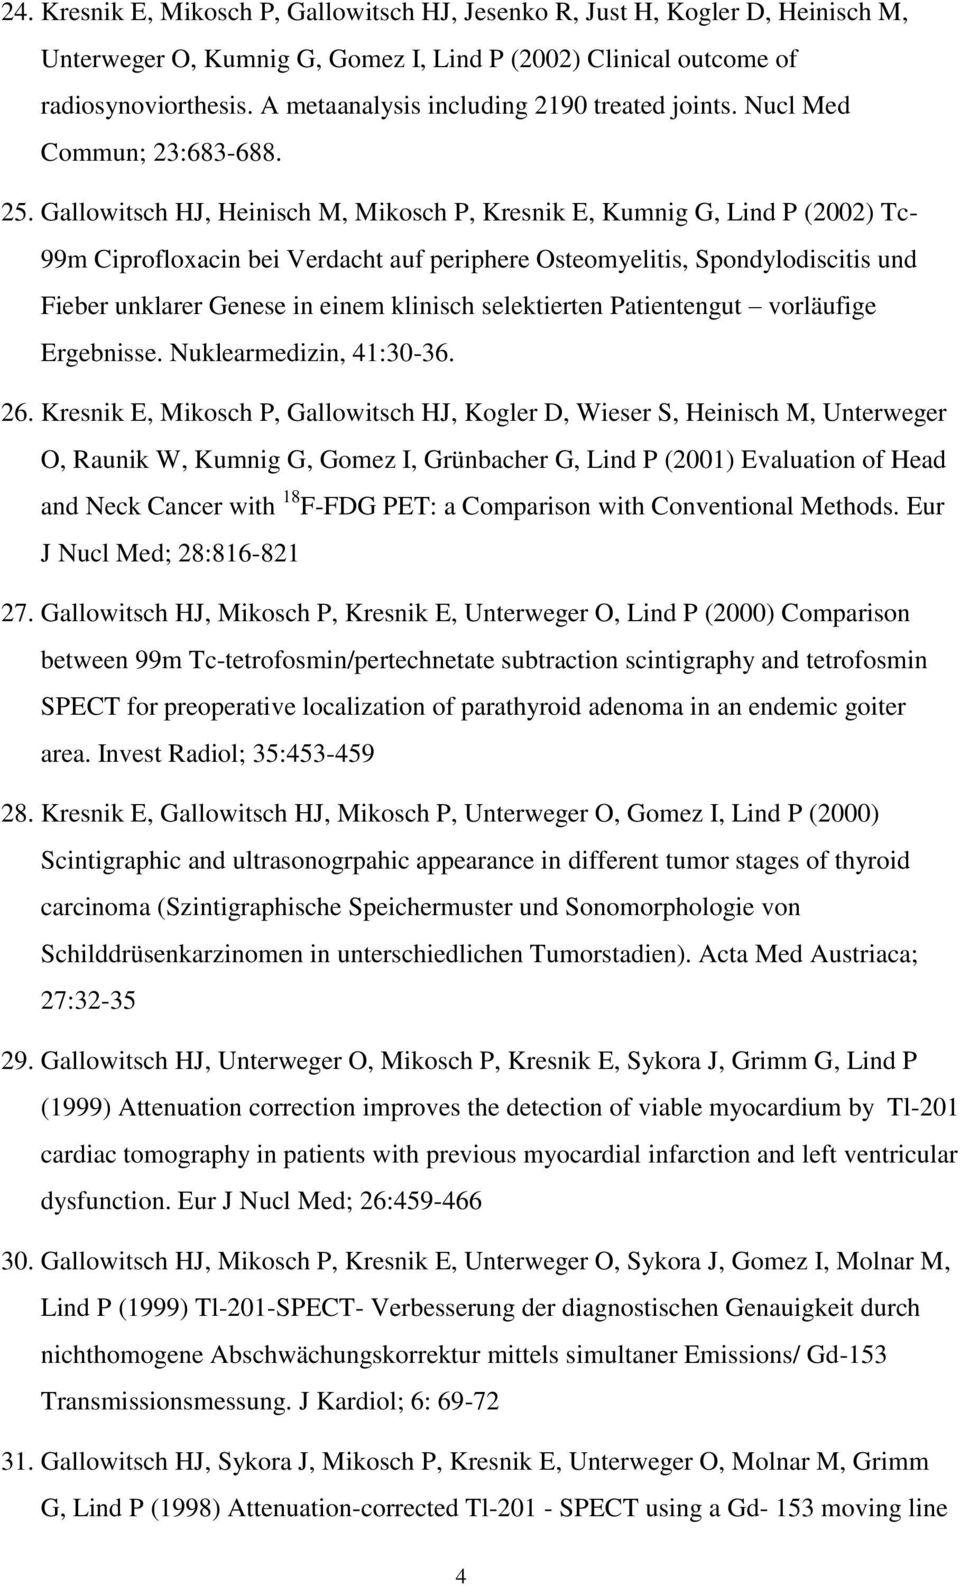 Gallowitsch HJ, Heinisch M, Mikosch P, Kresnik E, Kumnig G, Lind P (2002) Tc- 99m Ciprofloxacin bei Verdacht auf periphere Osteomyelitis, Spondylodiscitis und Fieber unklarer Genese in einem klinisch